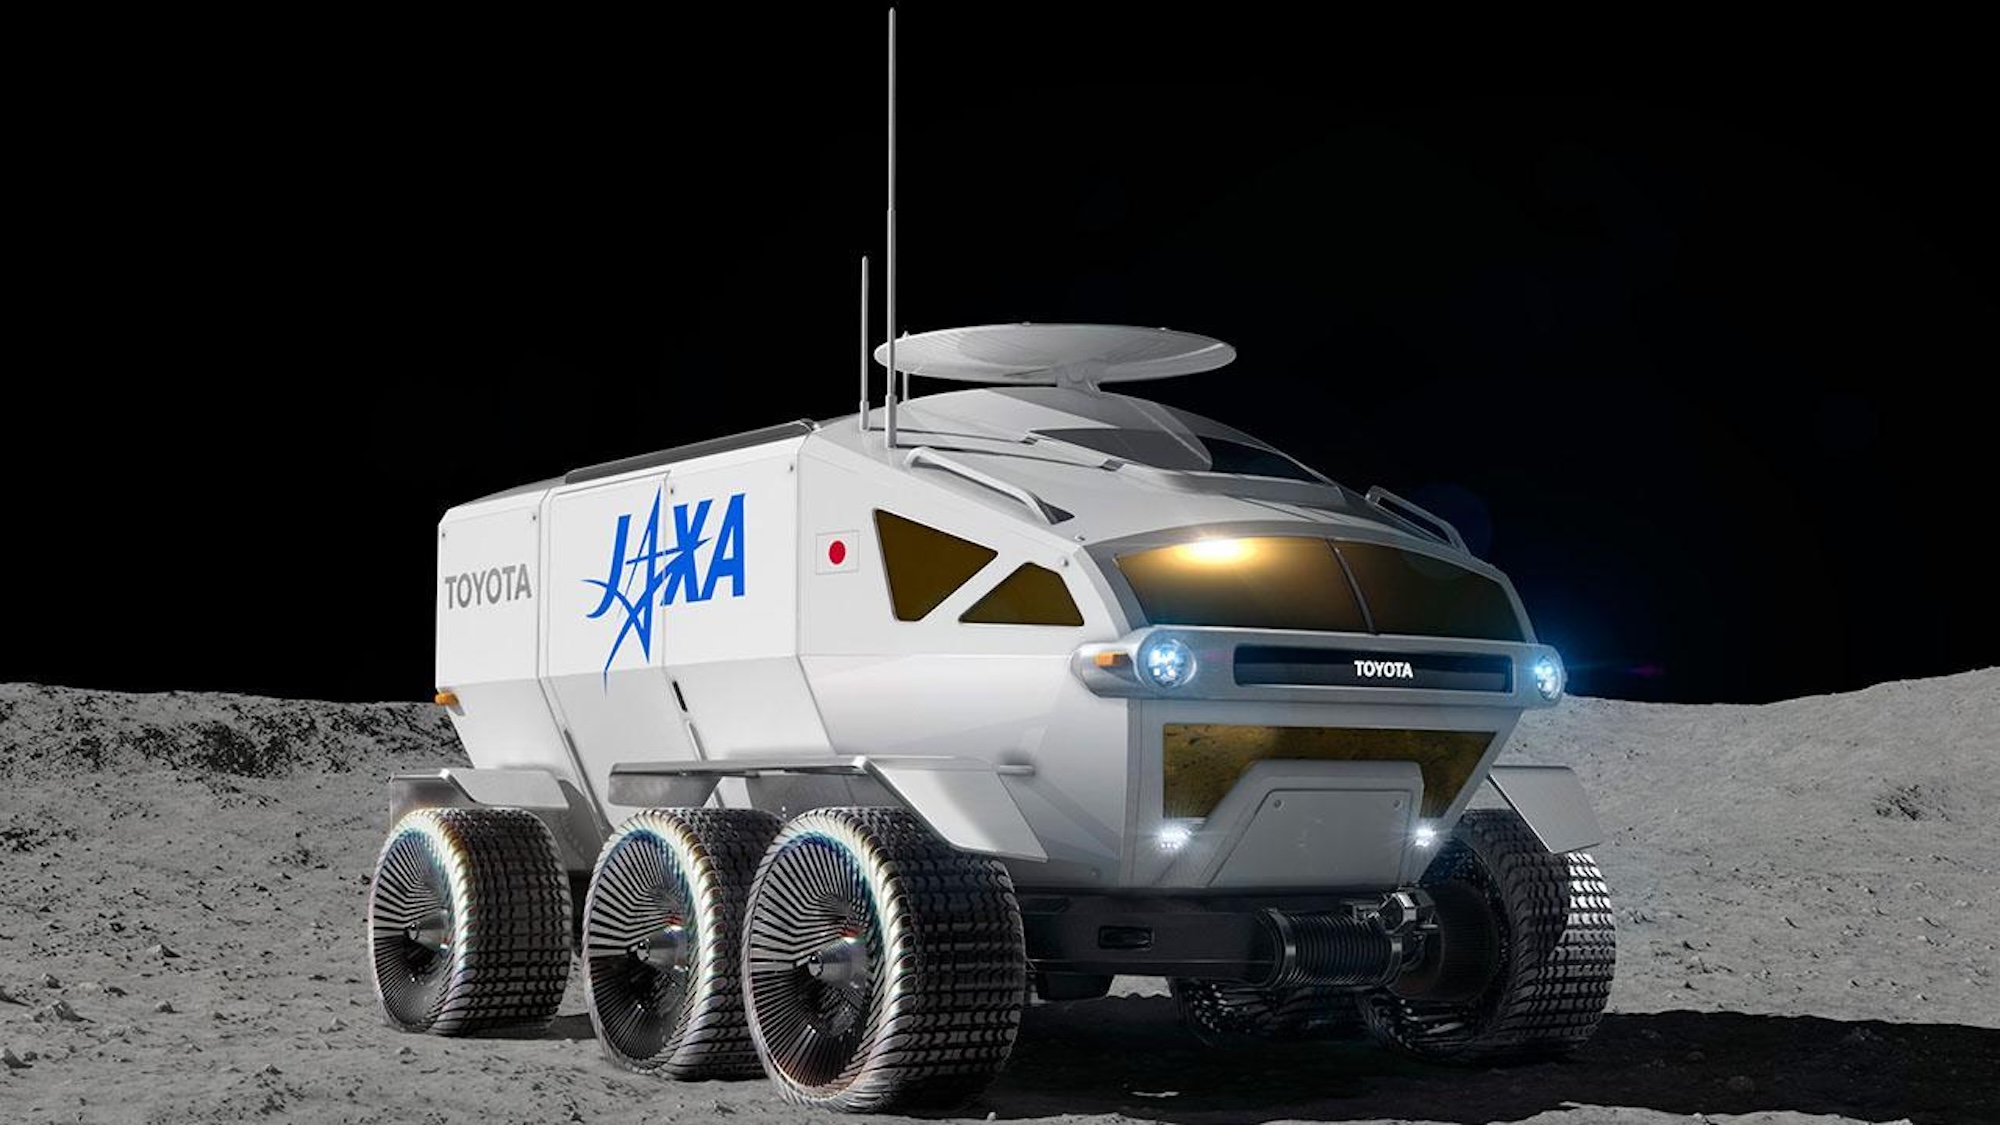 Toyota concept art for lunar RV